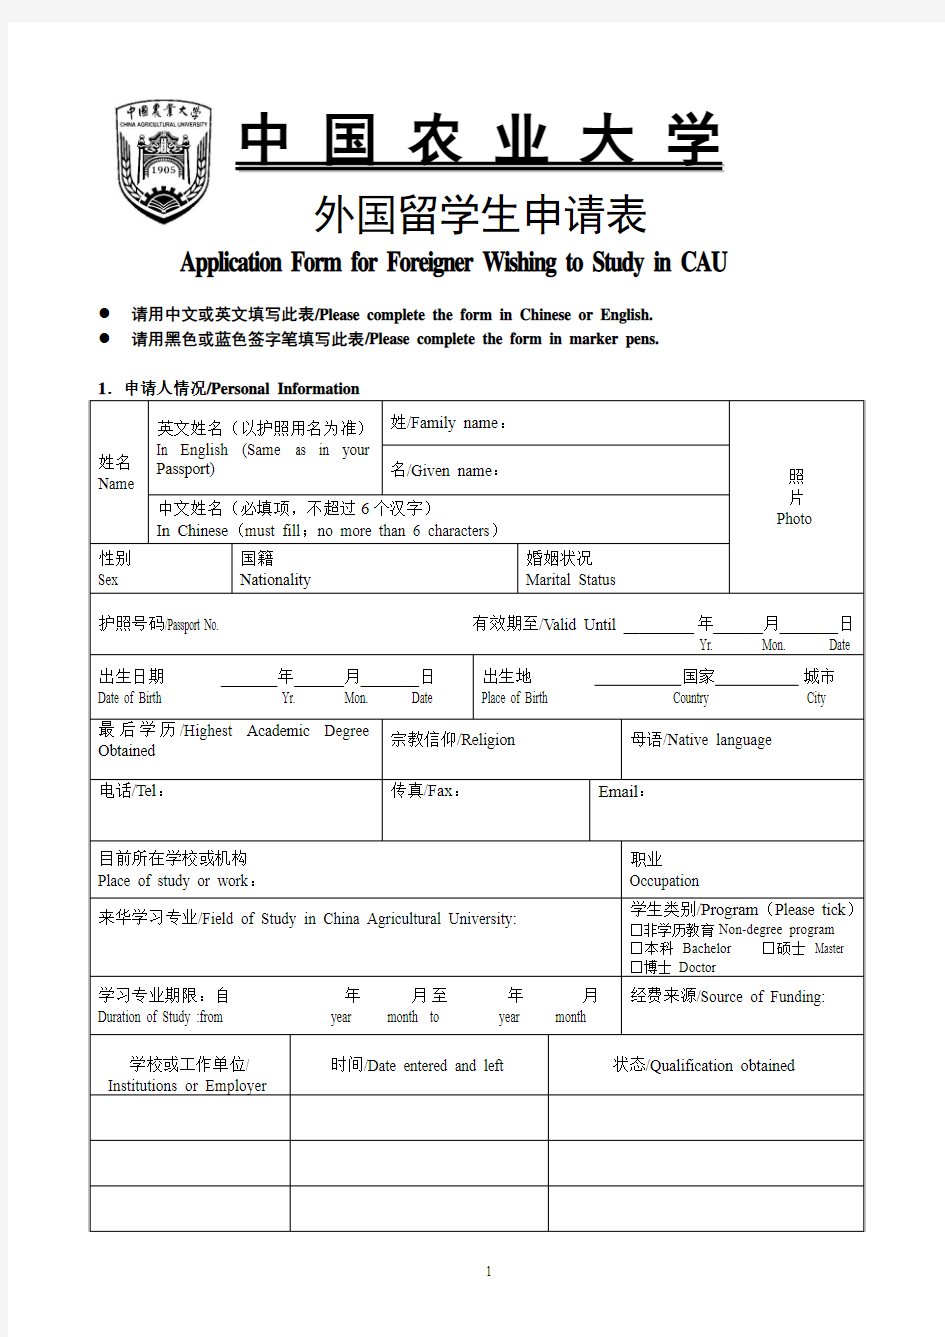 中国农业大学外国留学生申请表